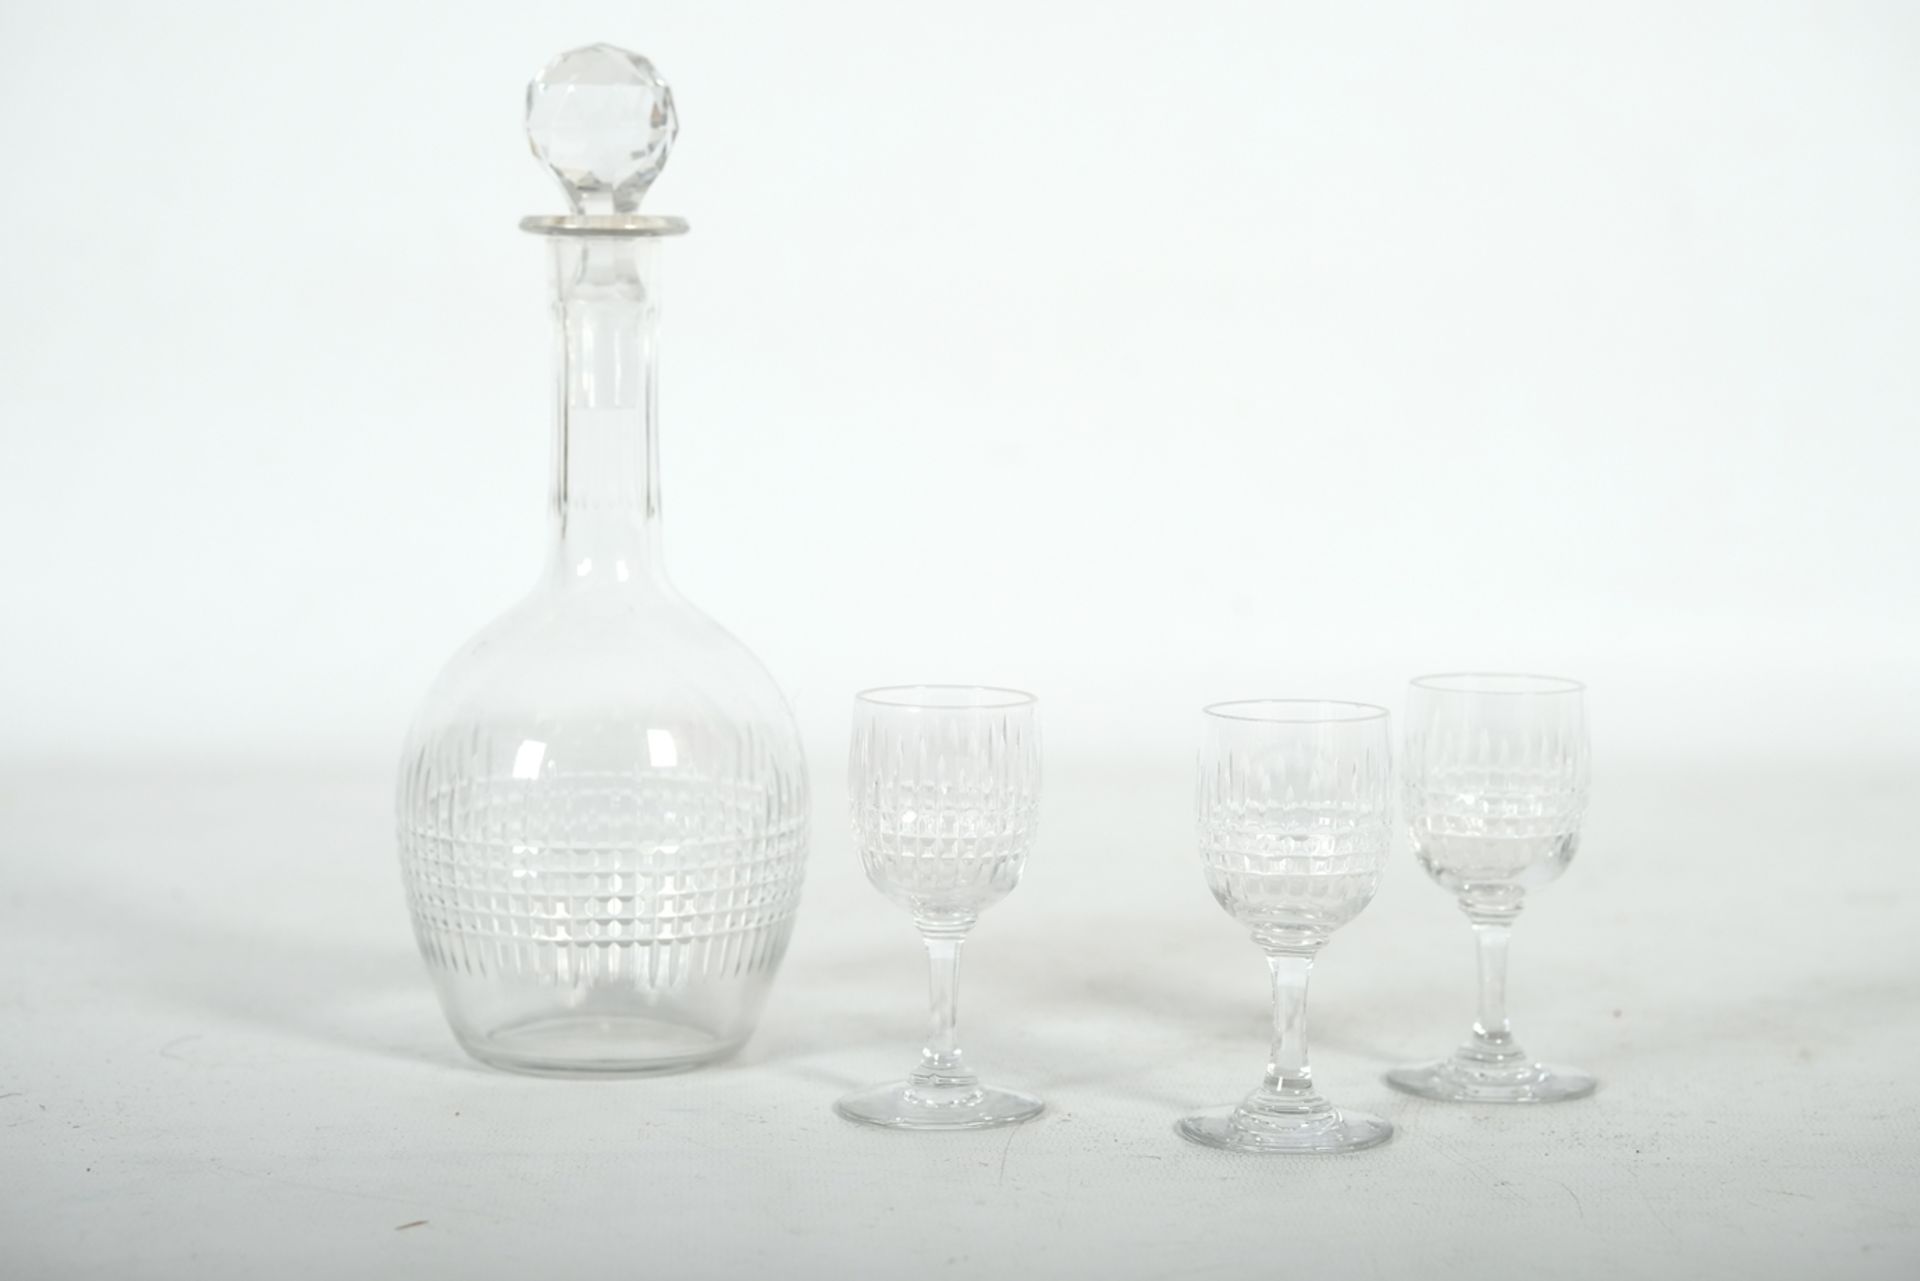 GLASKARAFFE mit Stopfen, geschliffen, mit drei kleinen Gläschen, Höhe Karaffe: 21cm, Höhe Gläser: 8